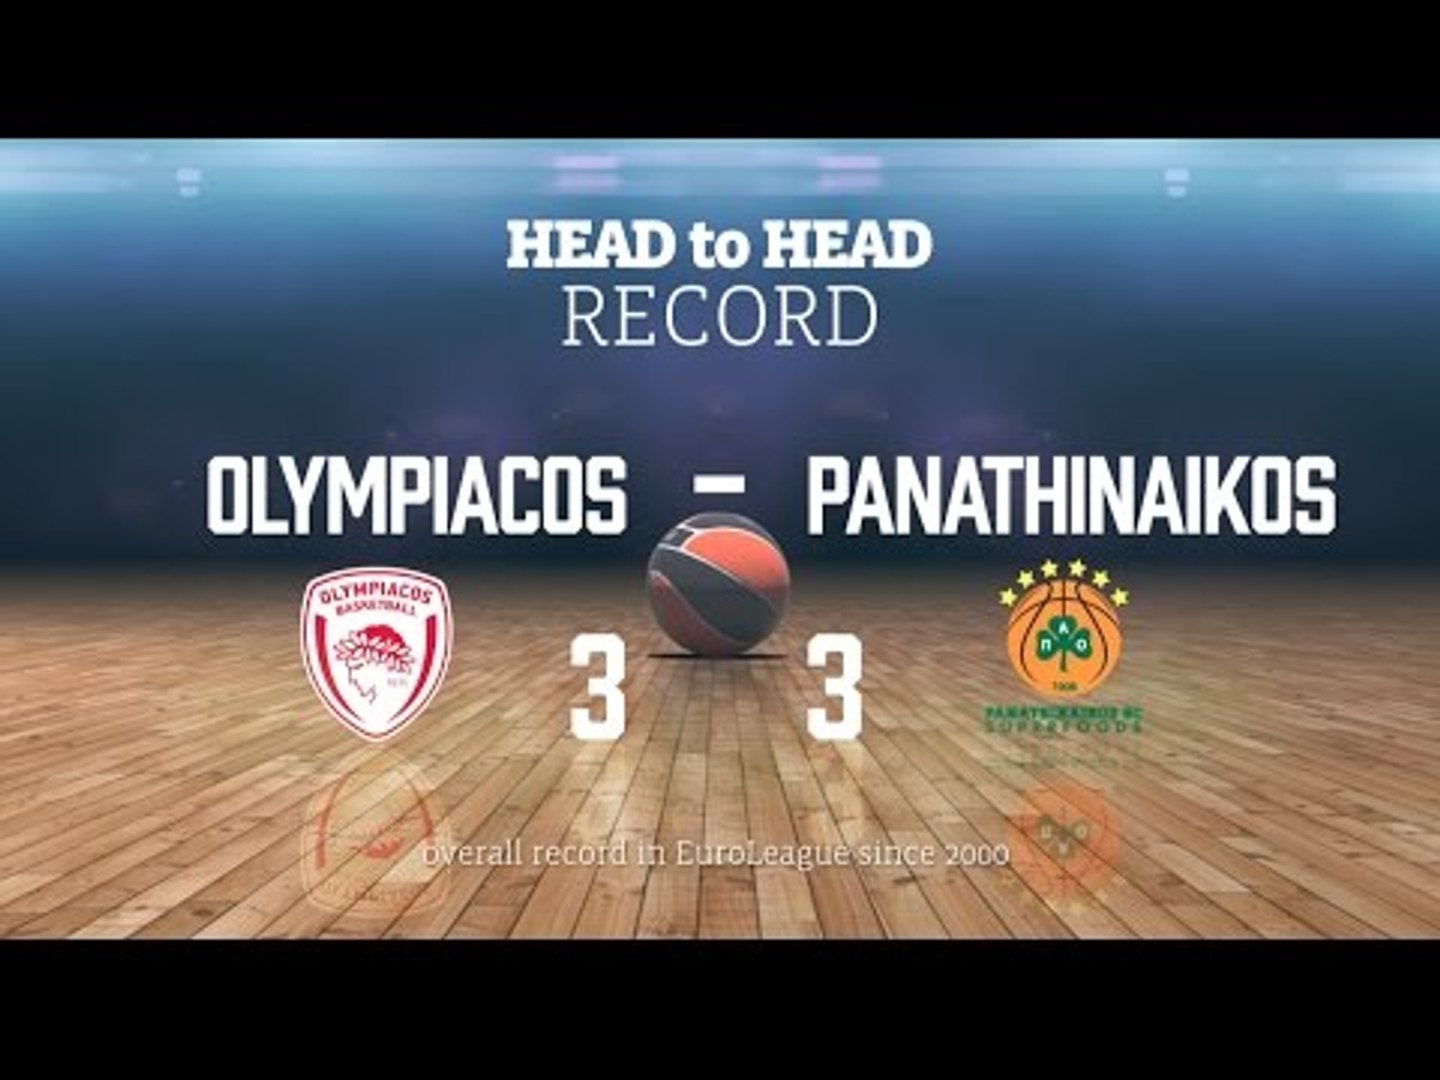 Greatest Rivalries Olympiacos vs Panathinaikos